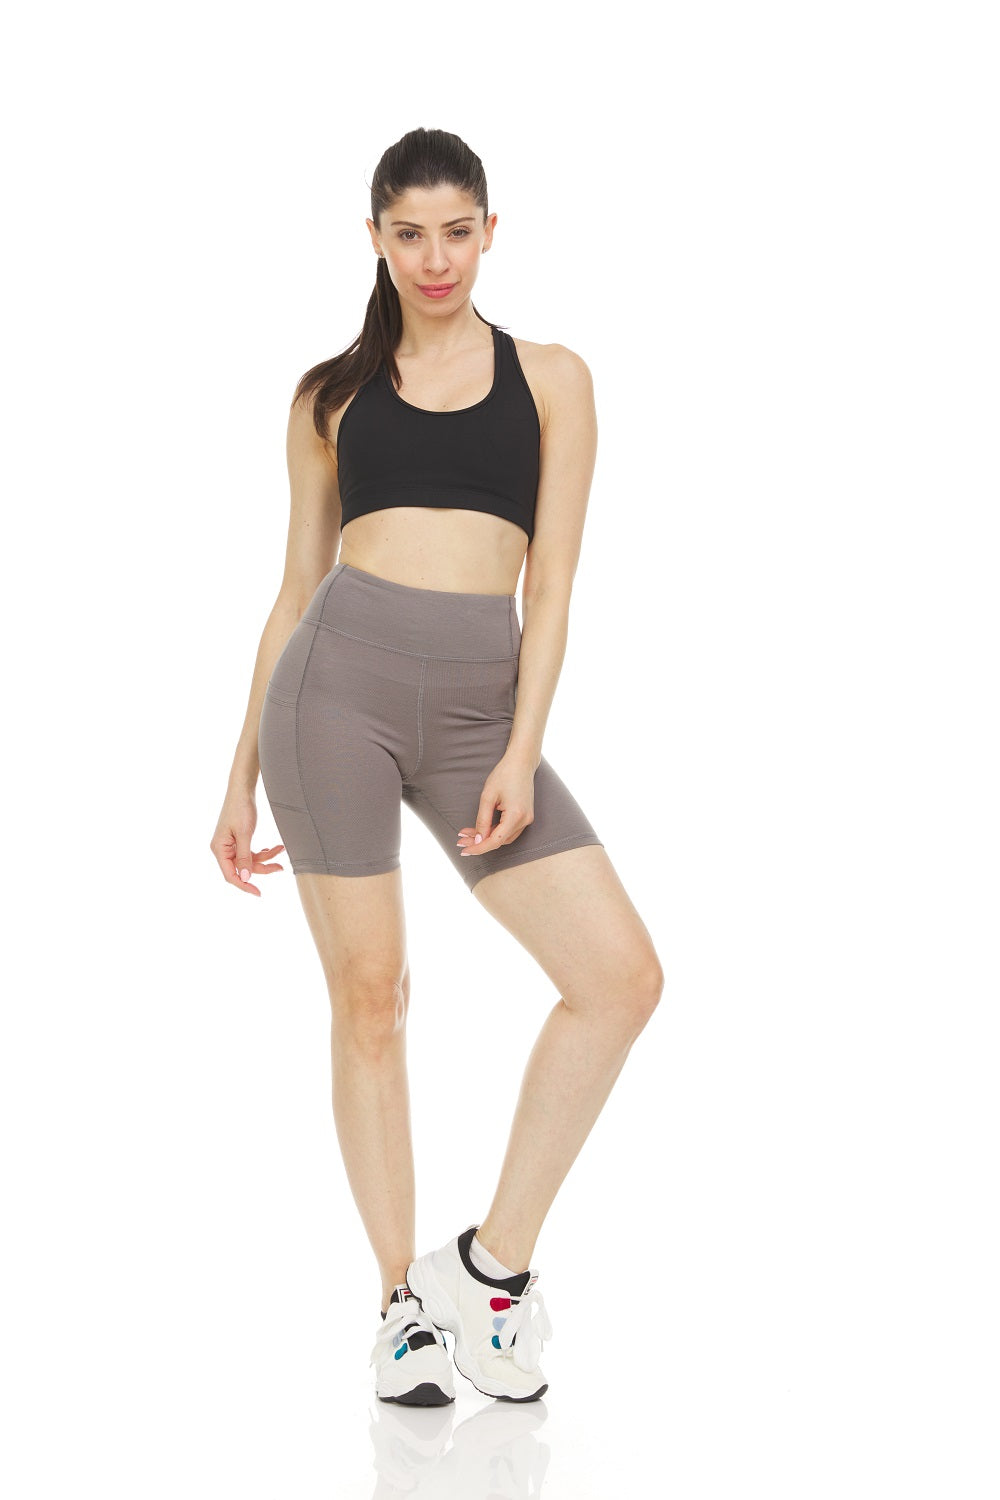 Women's High Waist Tummy Control Yoga Bike Shorts